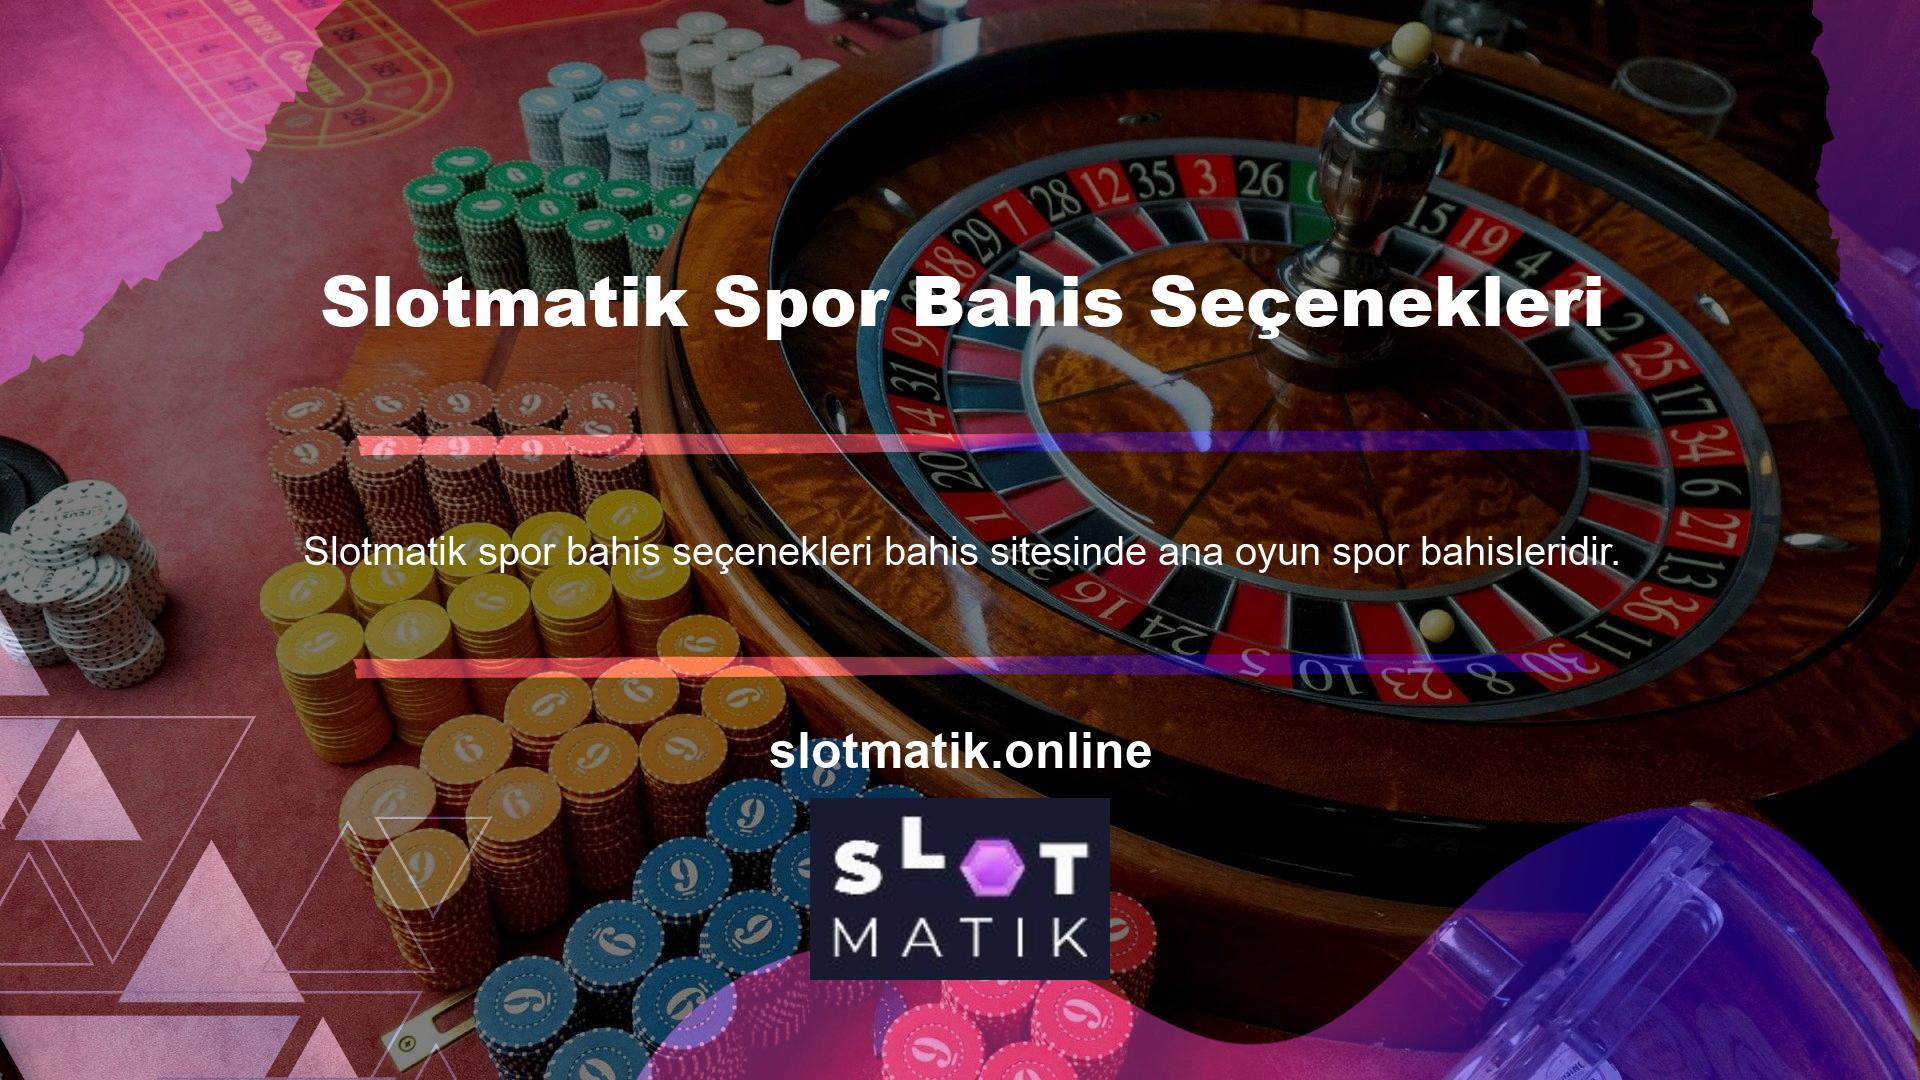 Slotmatik bu bahisler için geniş bir seçenek yelpazesi sunmakta ve bu konuda çok çeşitli oyunlara açık bir sitedir